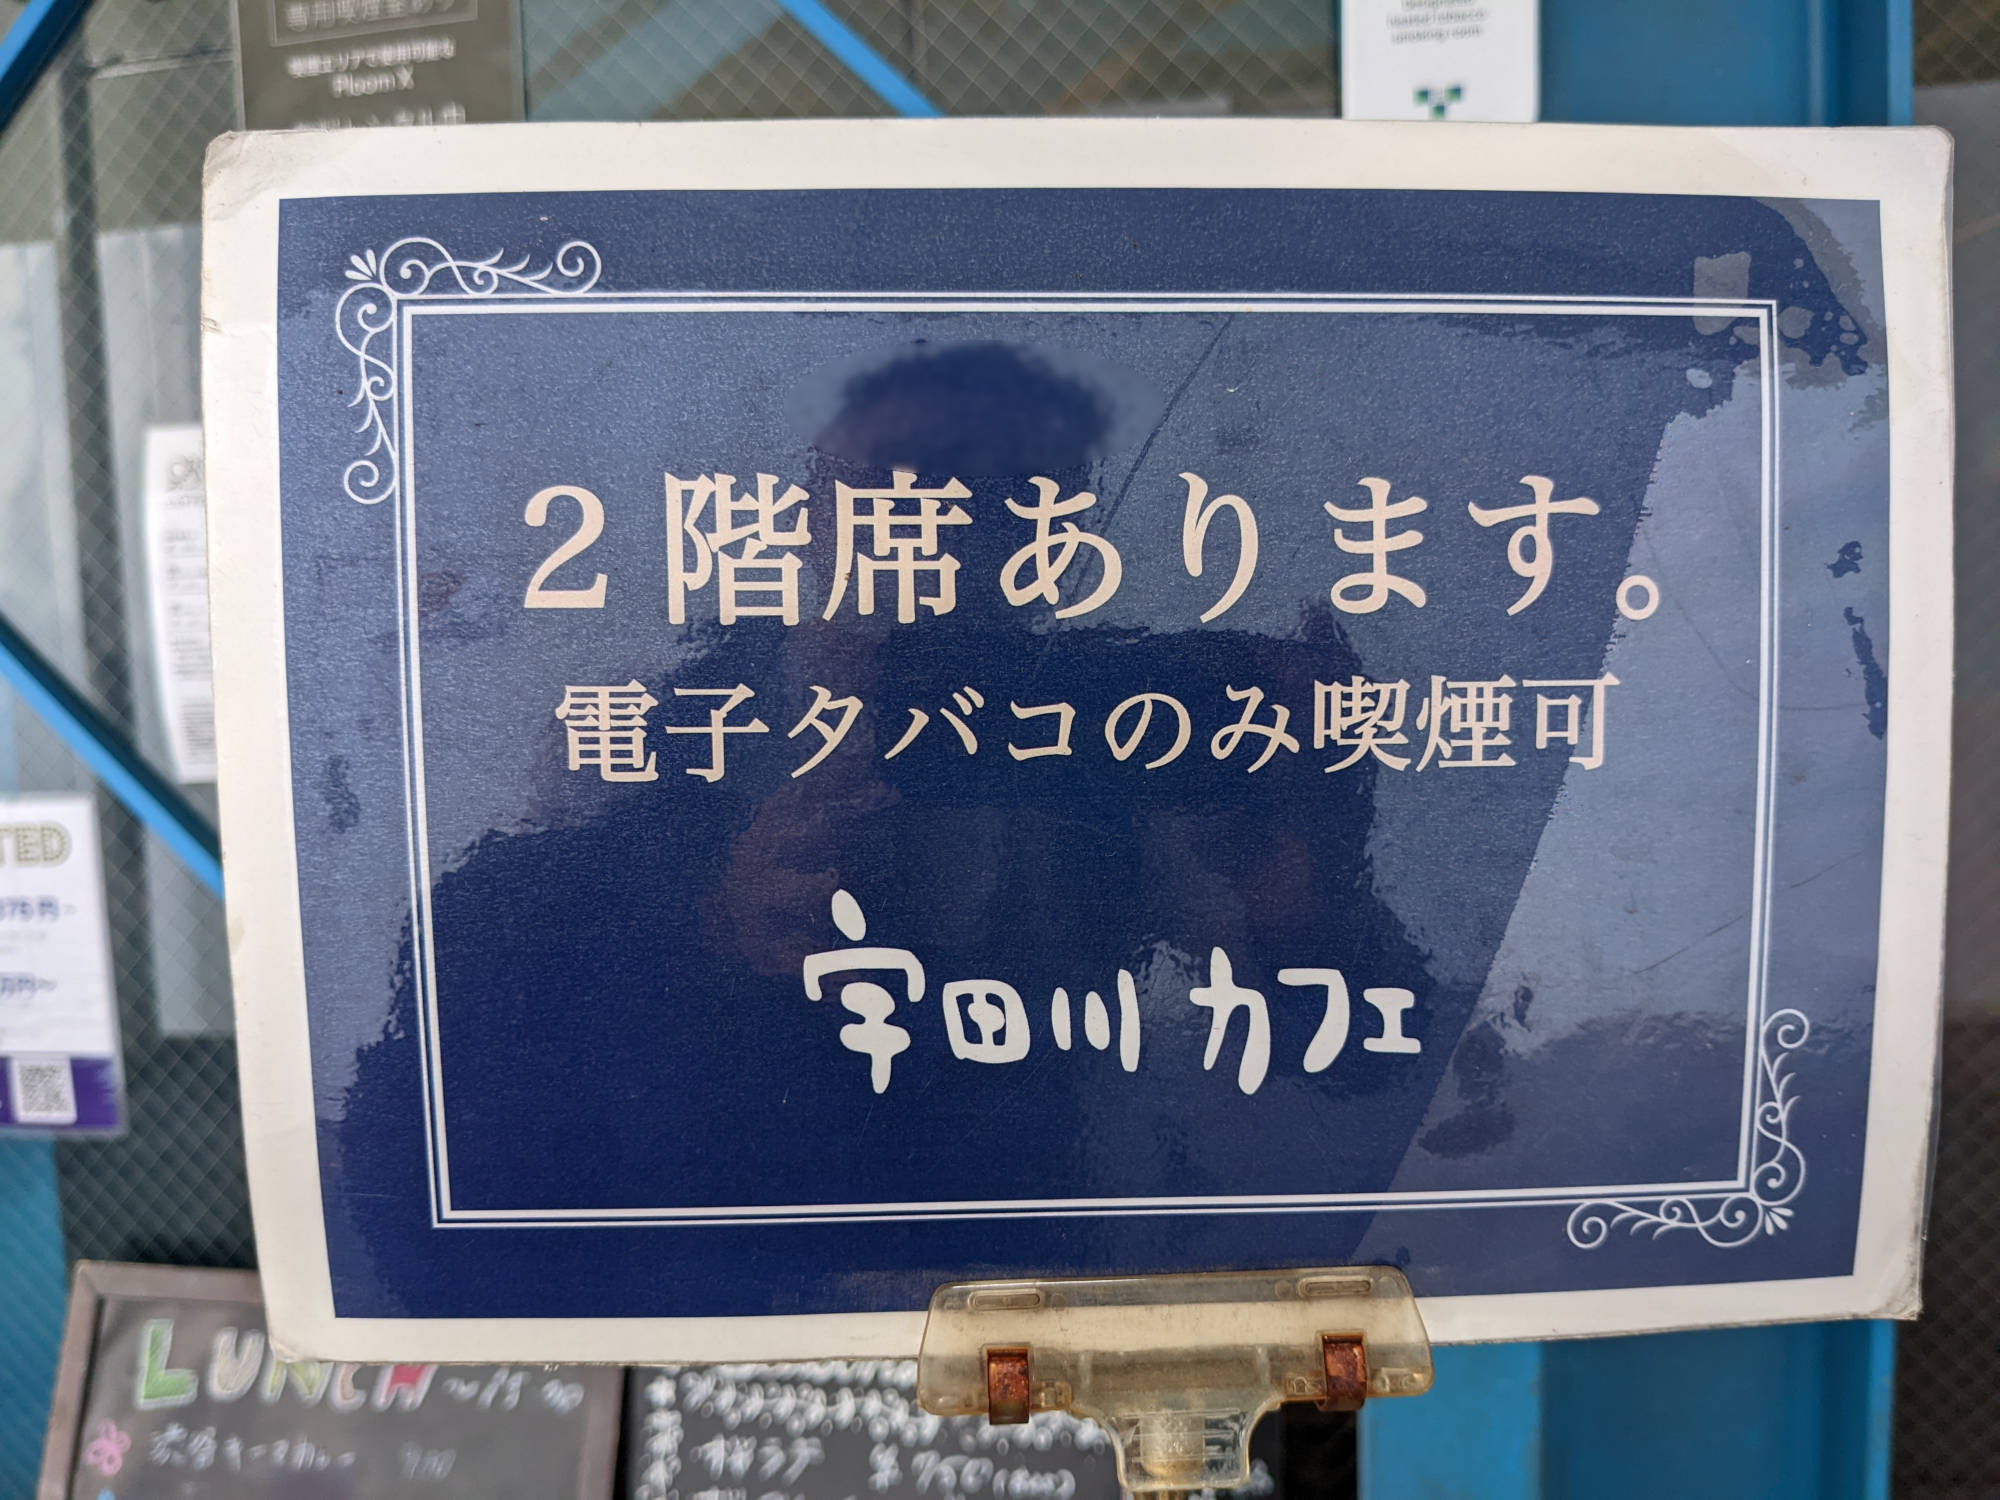 宇田川カフェ本店の喫煙情報